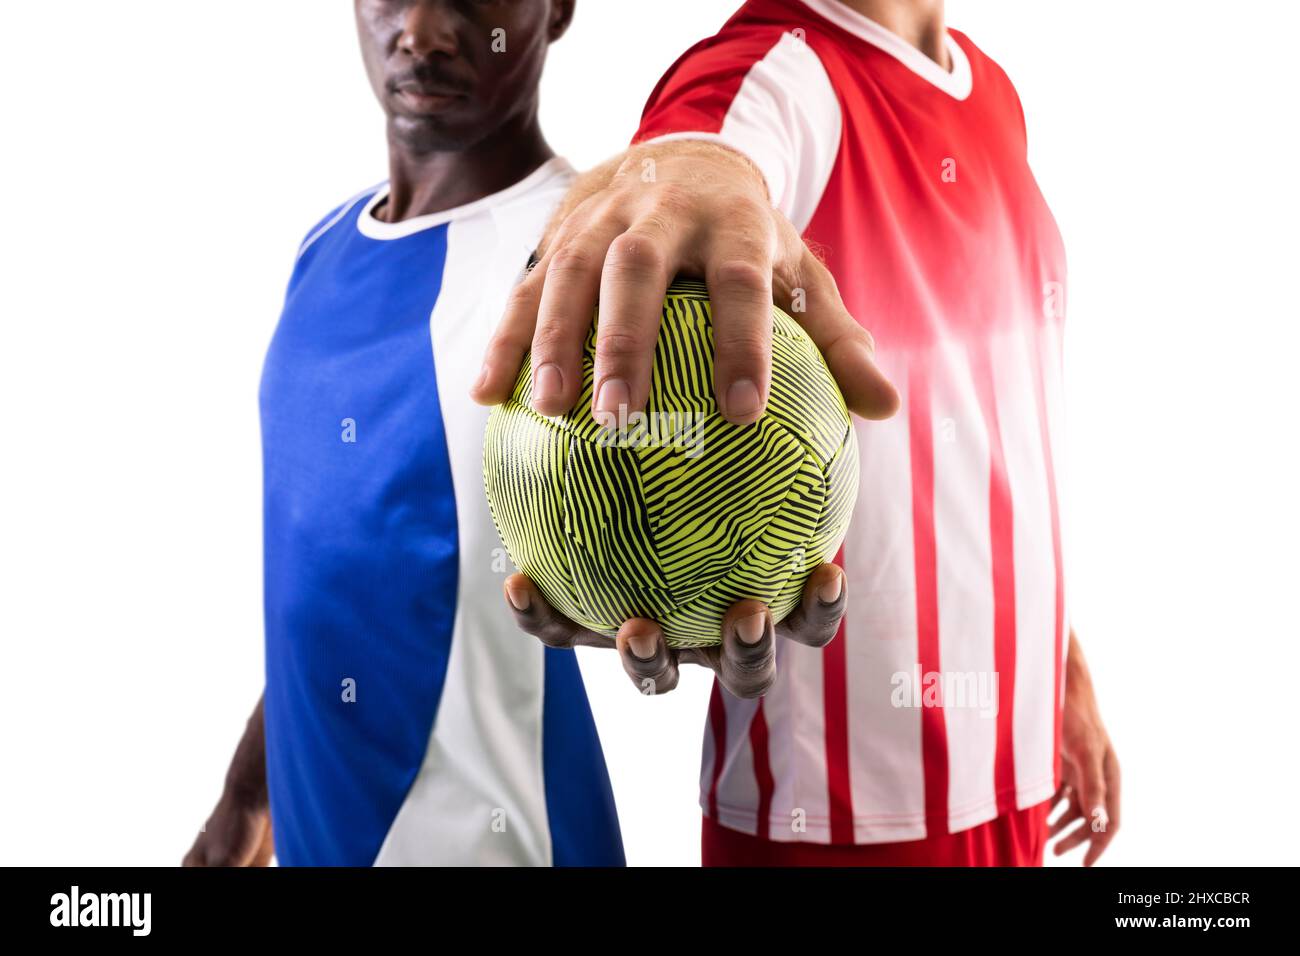 Männliche multirassische Handballspieler mit grüner Kugel, die vor weißem Hintergrund steht Stockfoto